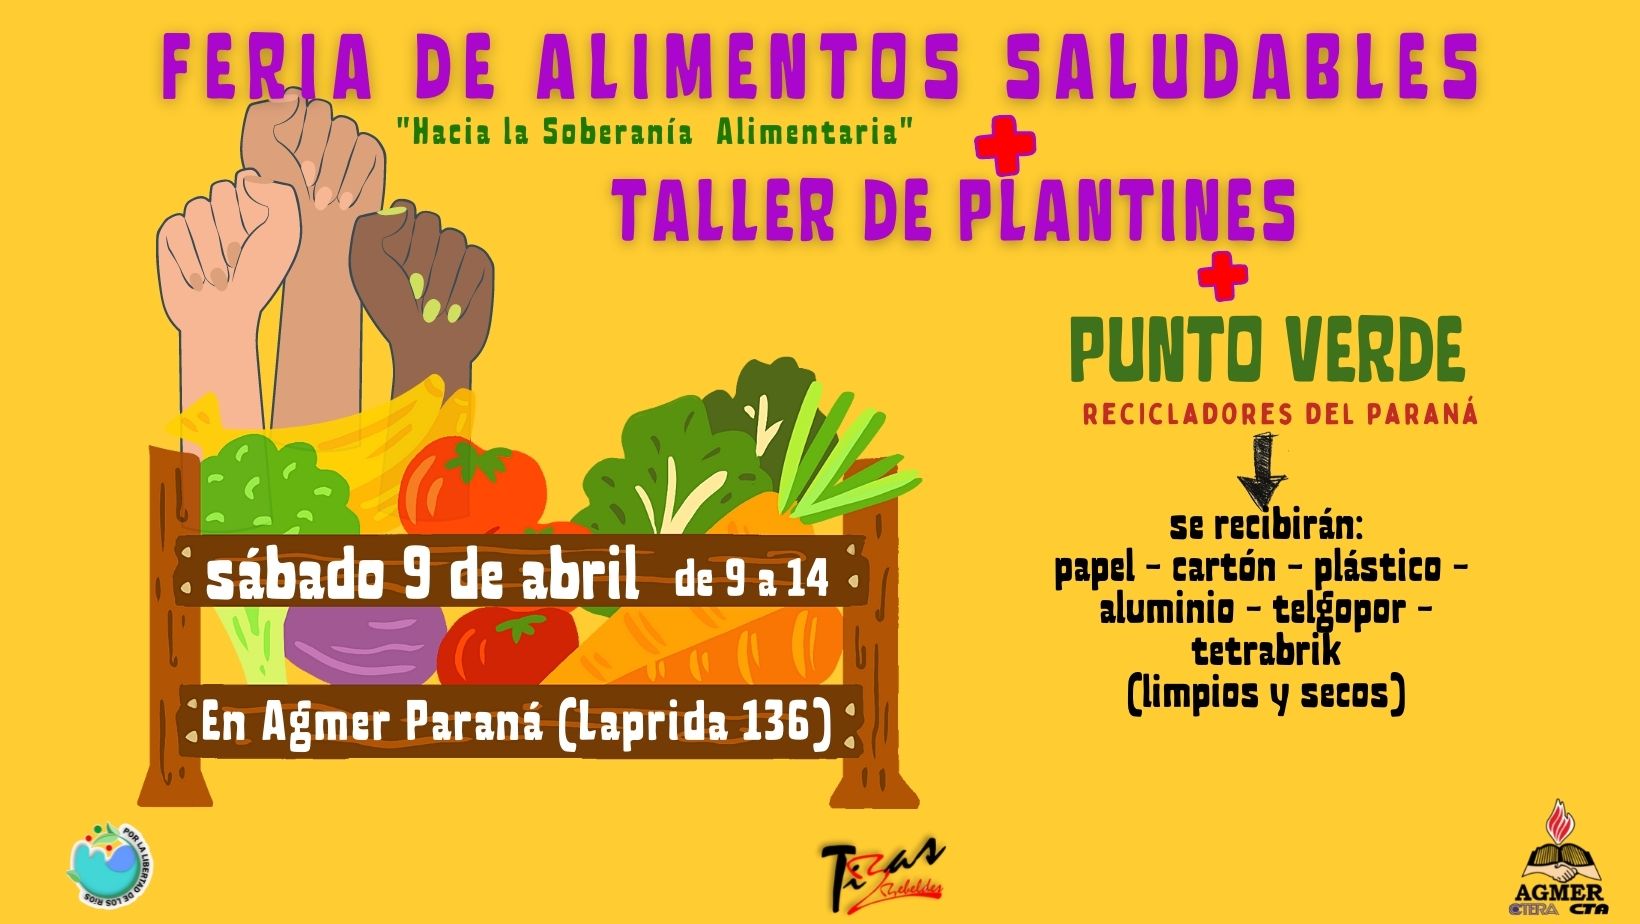 Feria de Alimentos Saludables, taller de plantines y punto verde. 9 de abril